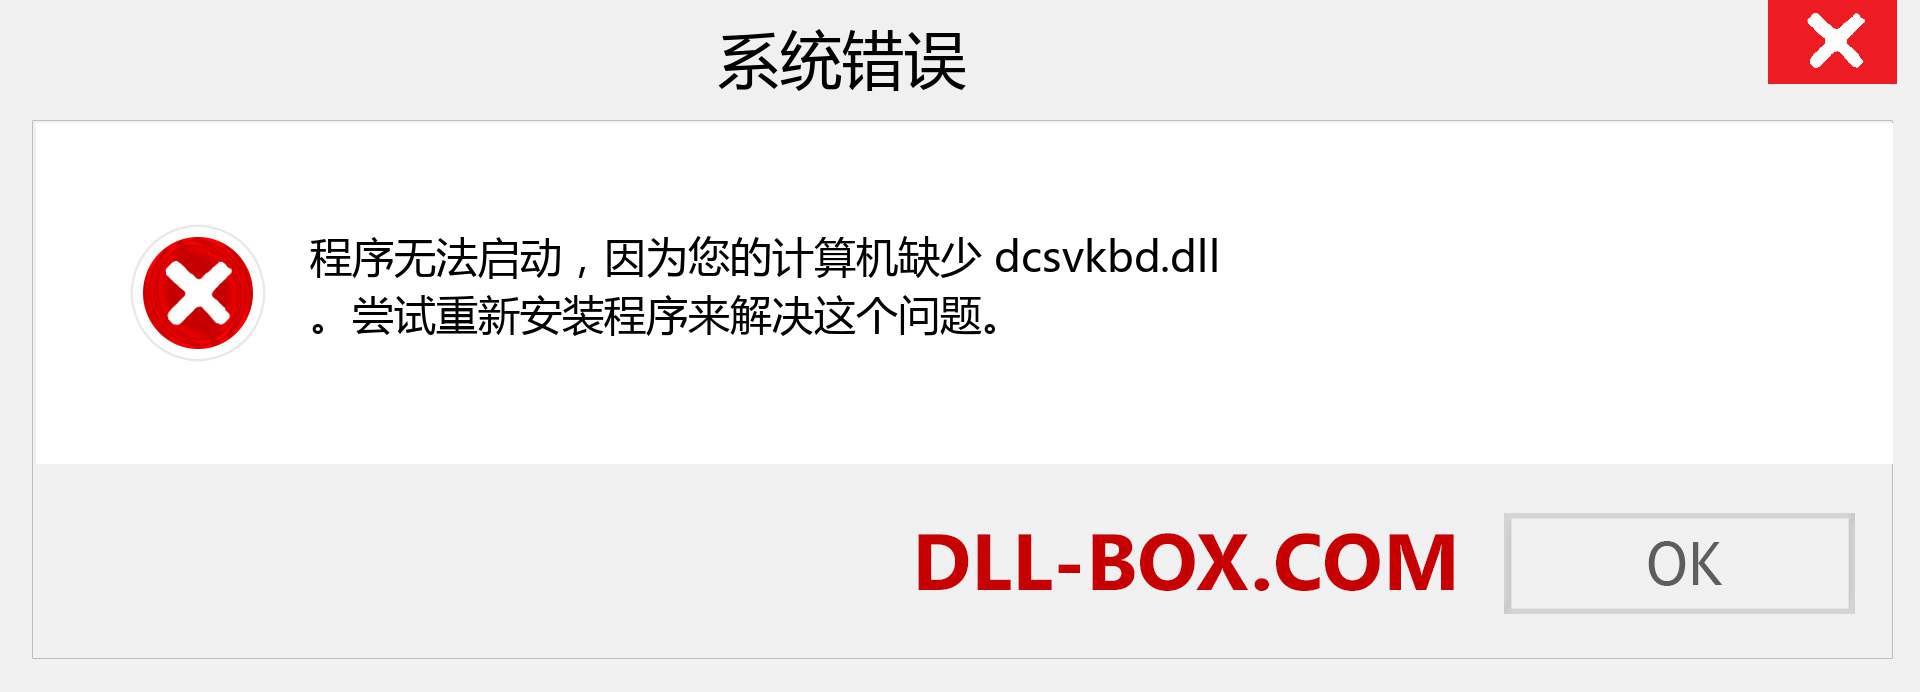 dcsvkbd.dll 文件丢失？。 适用于 Windows 7、8、10 的下载 - 修复 Windows、照片、图像上的 dcsvkbd dll 丢失错误